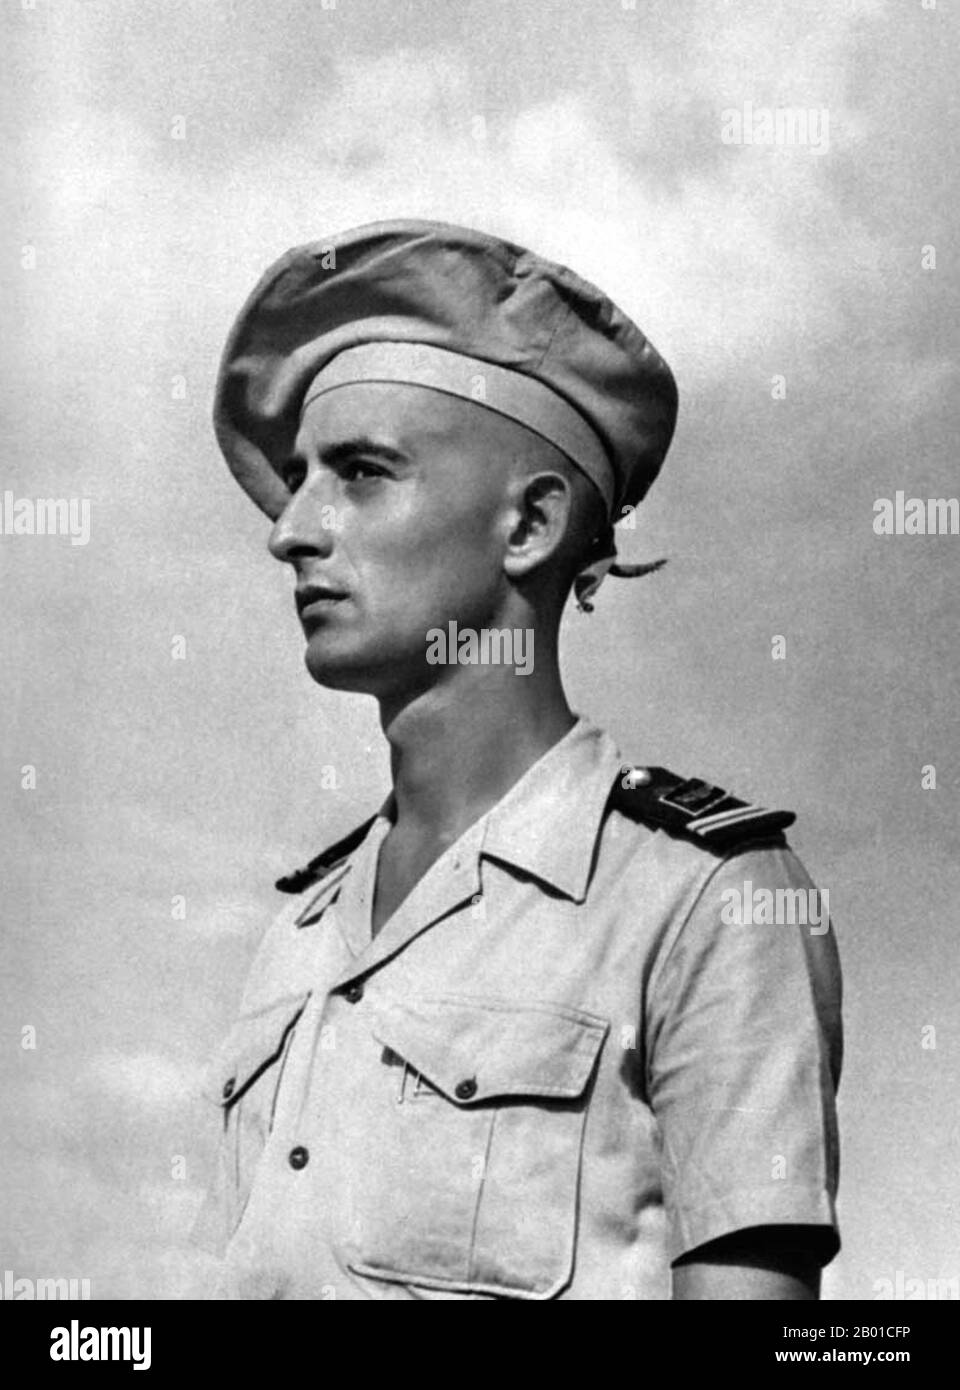 France/Vietnam : Lieutenant Bernard de Lattre de Tassigny (11 février 1928 - 30 mai 1951), c. 1950. Bernard de Lattre de Tassigny était un officier de l'armée française, qui a combattu pendant la Seconde Guerre mondiale et la première Guerre d'Indochine. Bernard de Lattre a reçu plusieurs médailles au cours de sa carrière militaire, y compris le militaire de Médaille. Il a été tué en action à l'âge de 23 ans, se battant près de Ninh Binh. Au moment de sa mort, son père, le général Jean de Lattre de Tassigny, était le commandant général des forces françaises en Indochine. La mort de Bernard a fait l'objet d'une large couverture médiatique. Banque D'Images